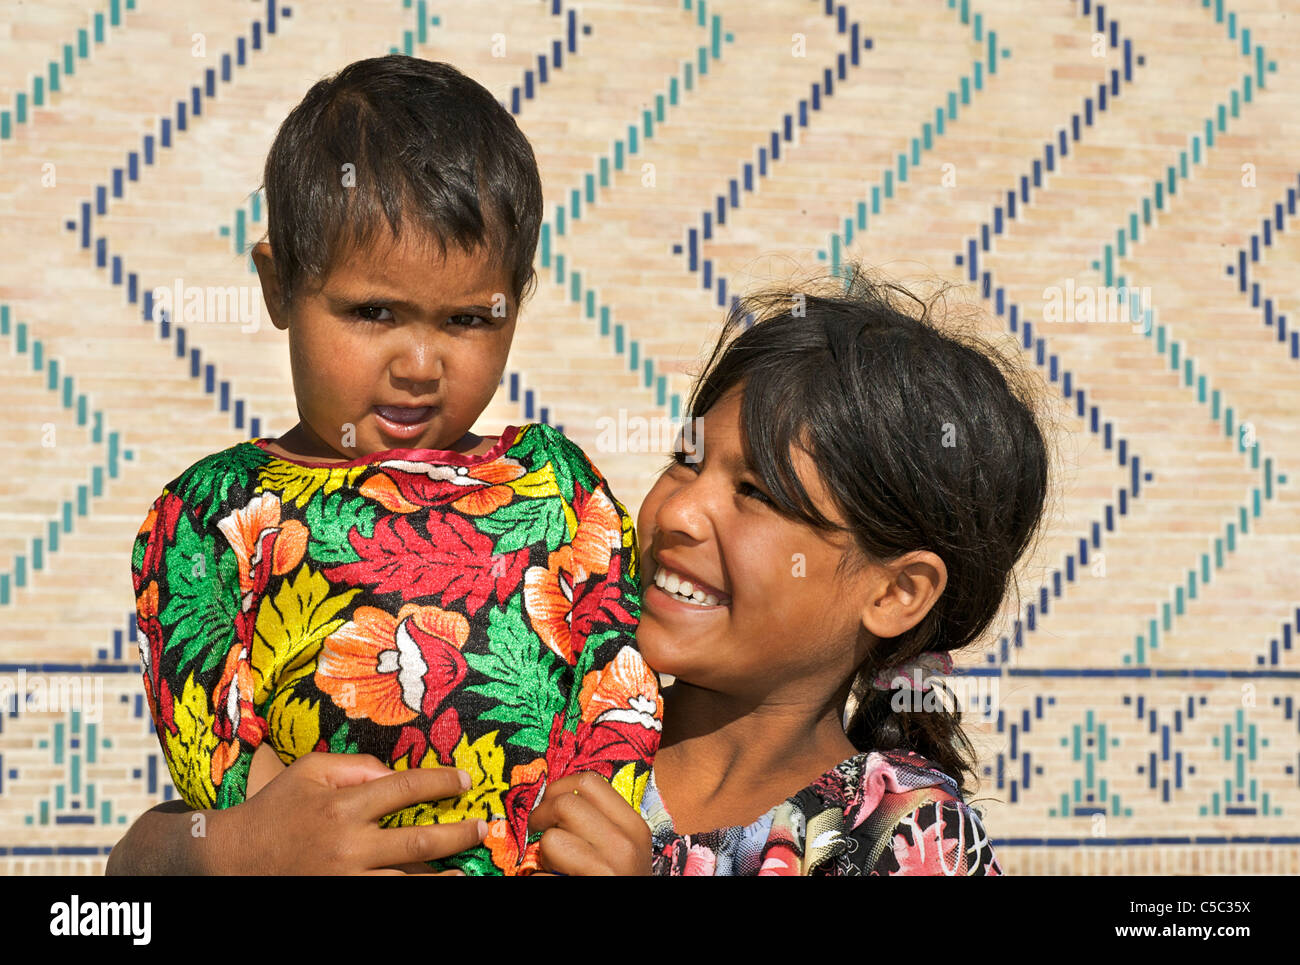 Uzbeki child and younger sister, Samarkand, Uzbekistan Stock Photo